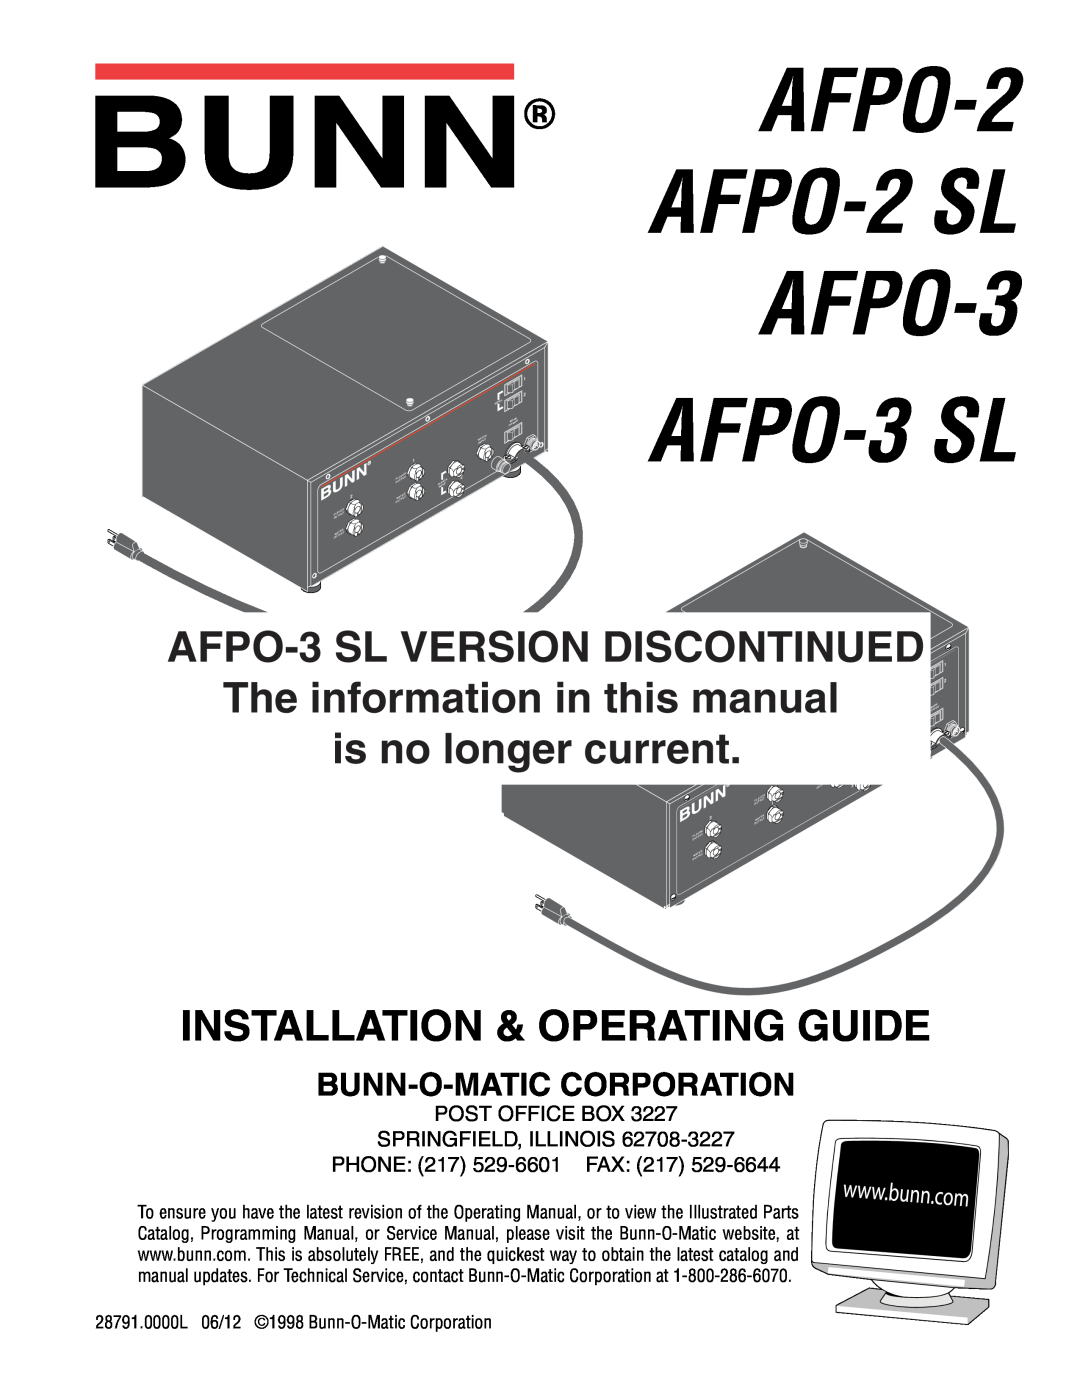 Bunn AFPO-2 SL service manual Bunn-O-Maticcorporation, AFPO-2 AFPO-2SL AFPO-3, AFPO-3SL VERSION DISCONTINUED 